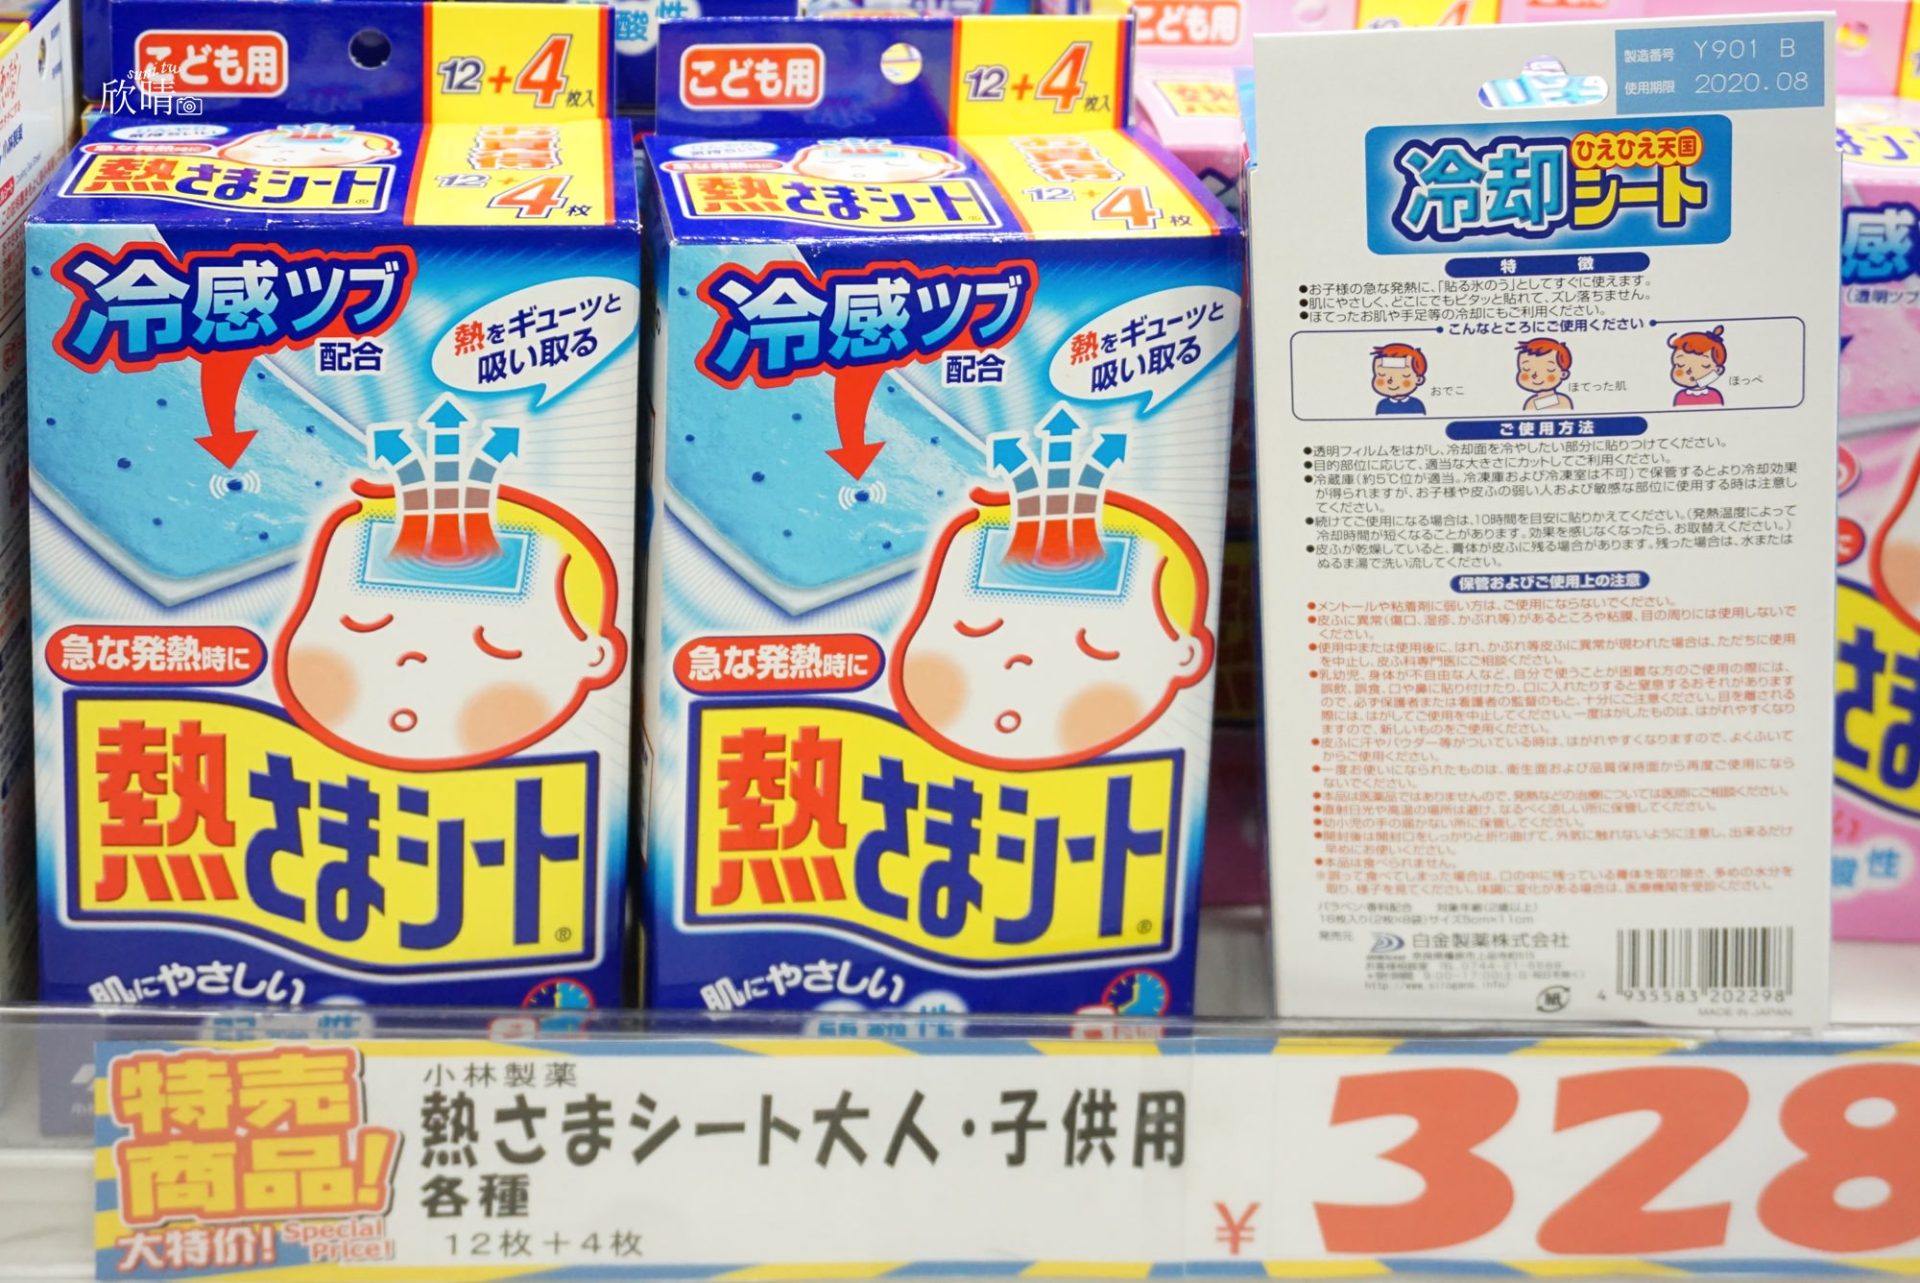 沖繩美國村｜大國藥妝店Daikoku Drug~EX Plus 270錠只要4380日幣，價錢好便宜